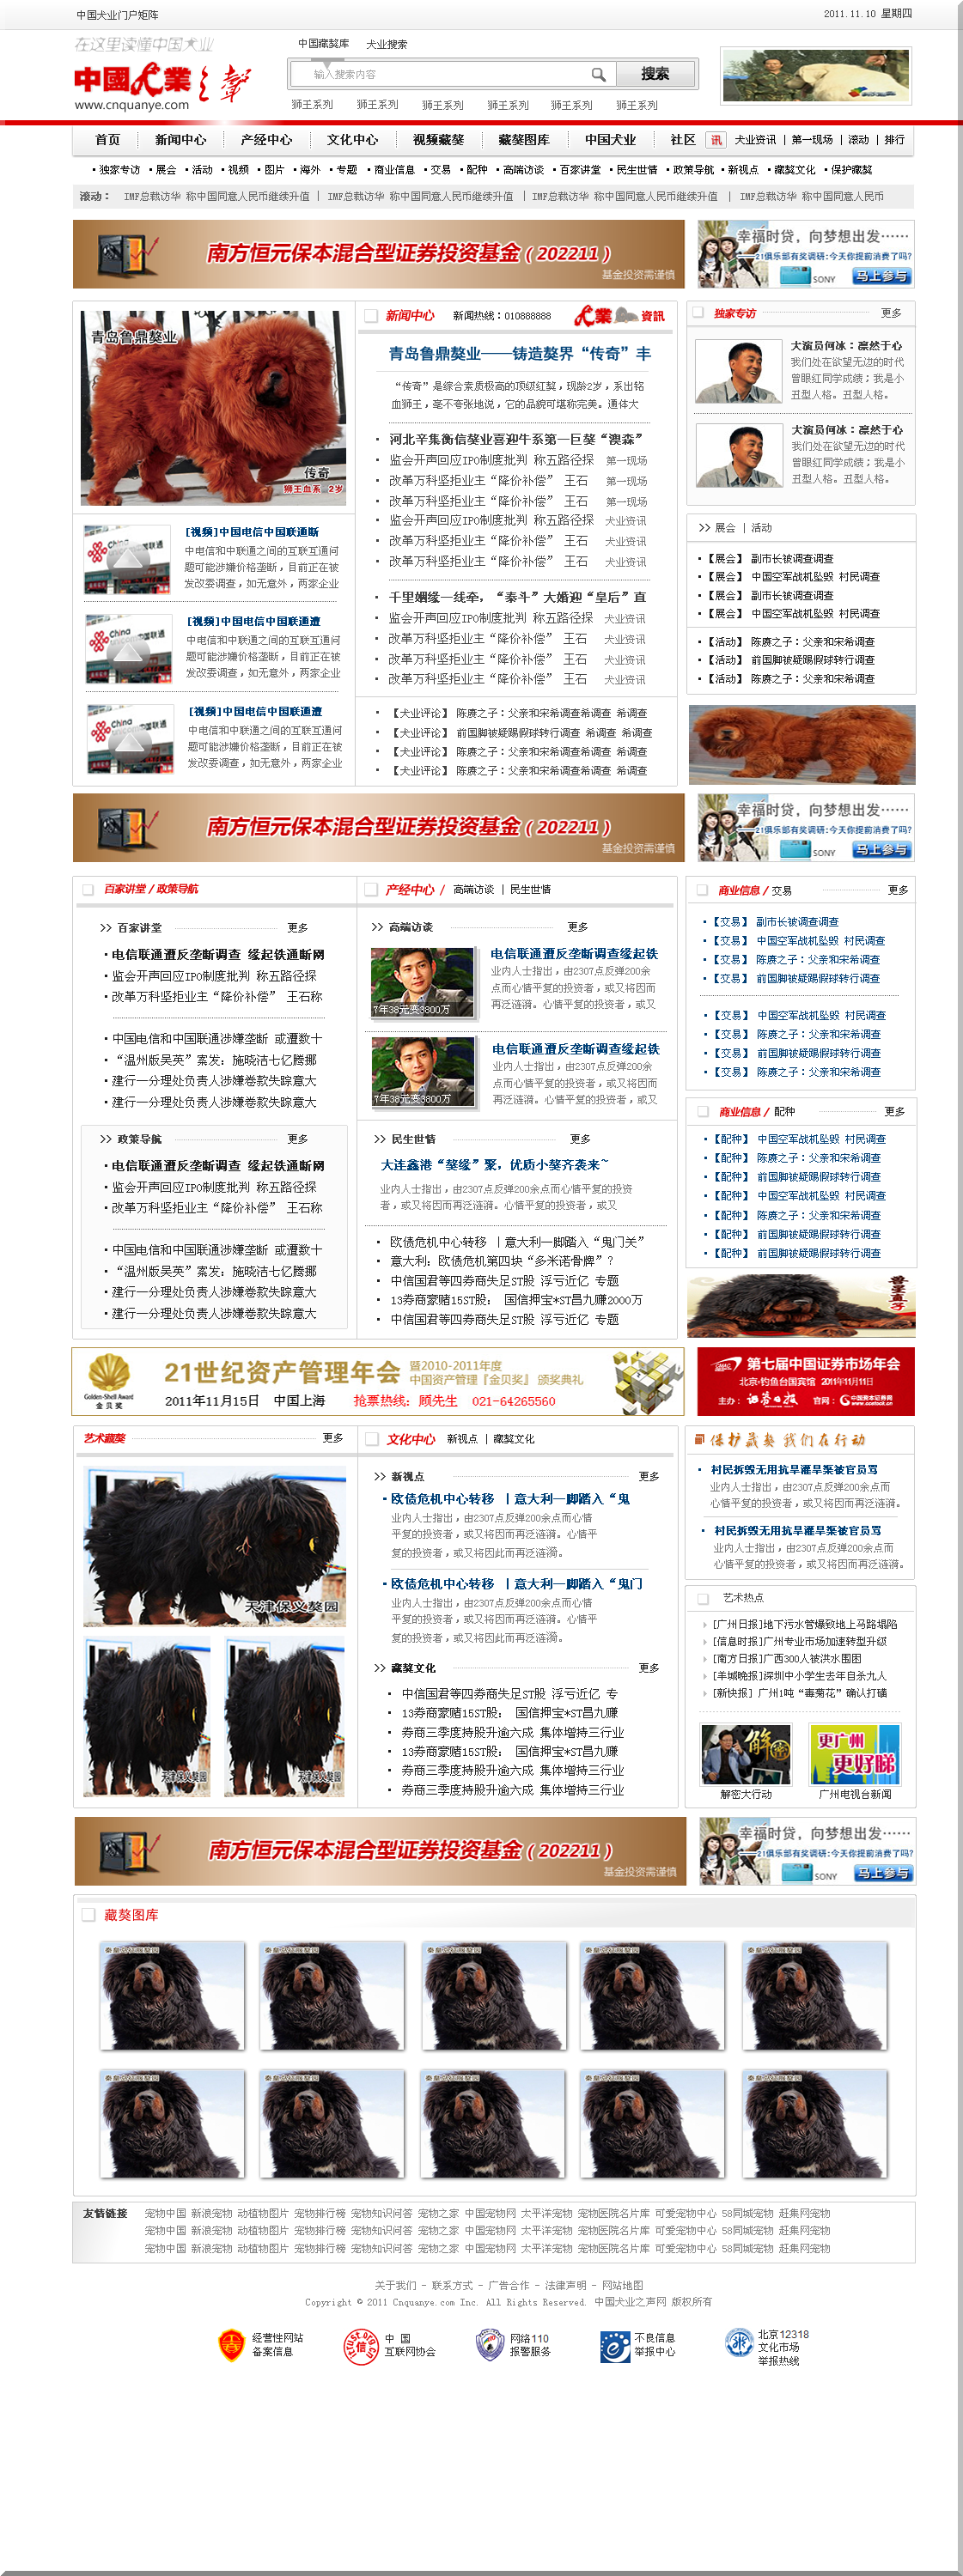 中国犬业之声网站初版